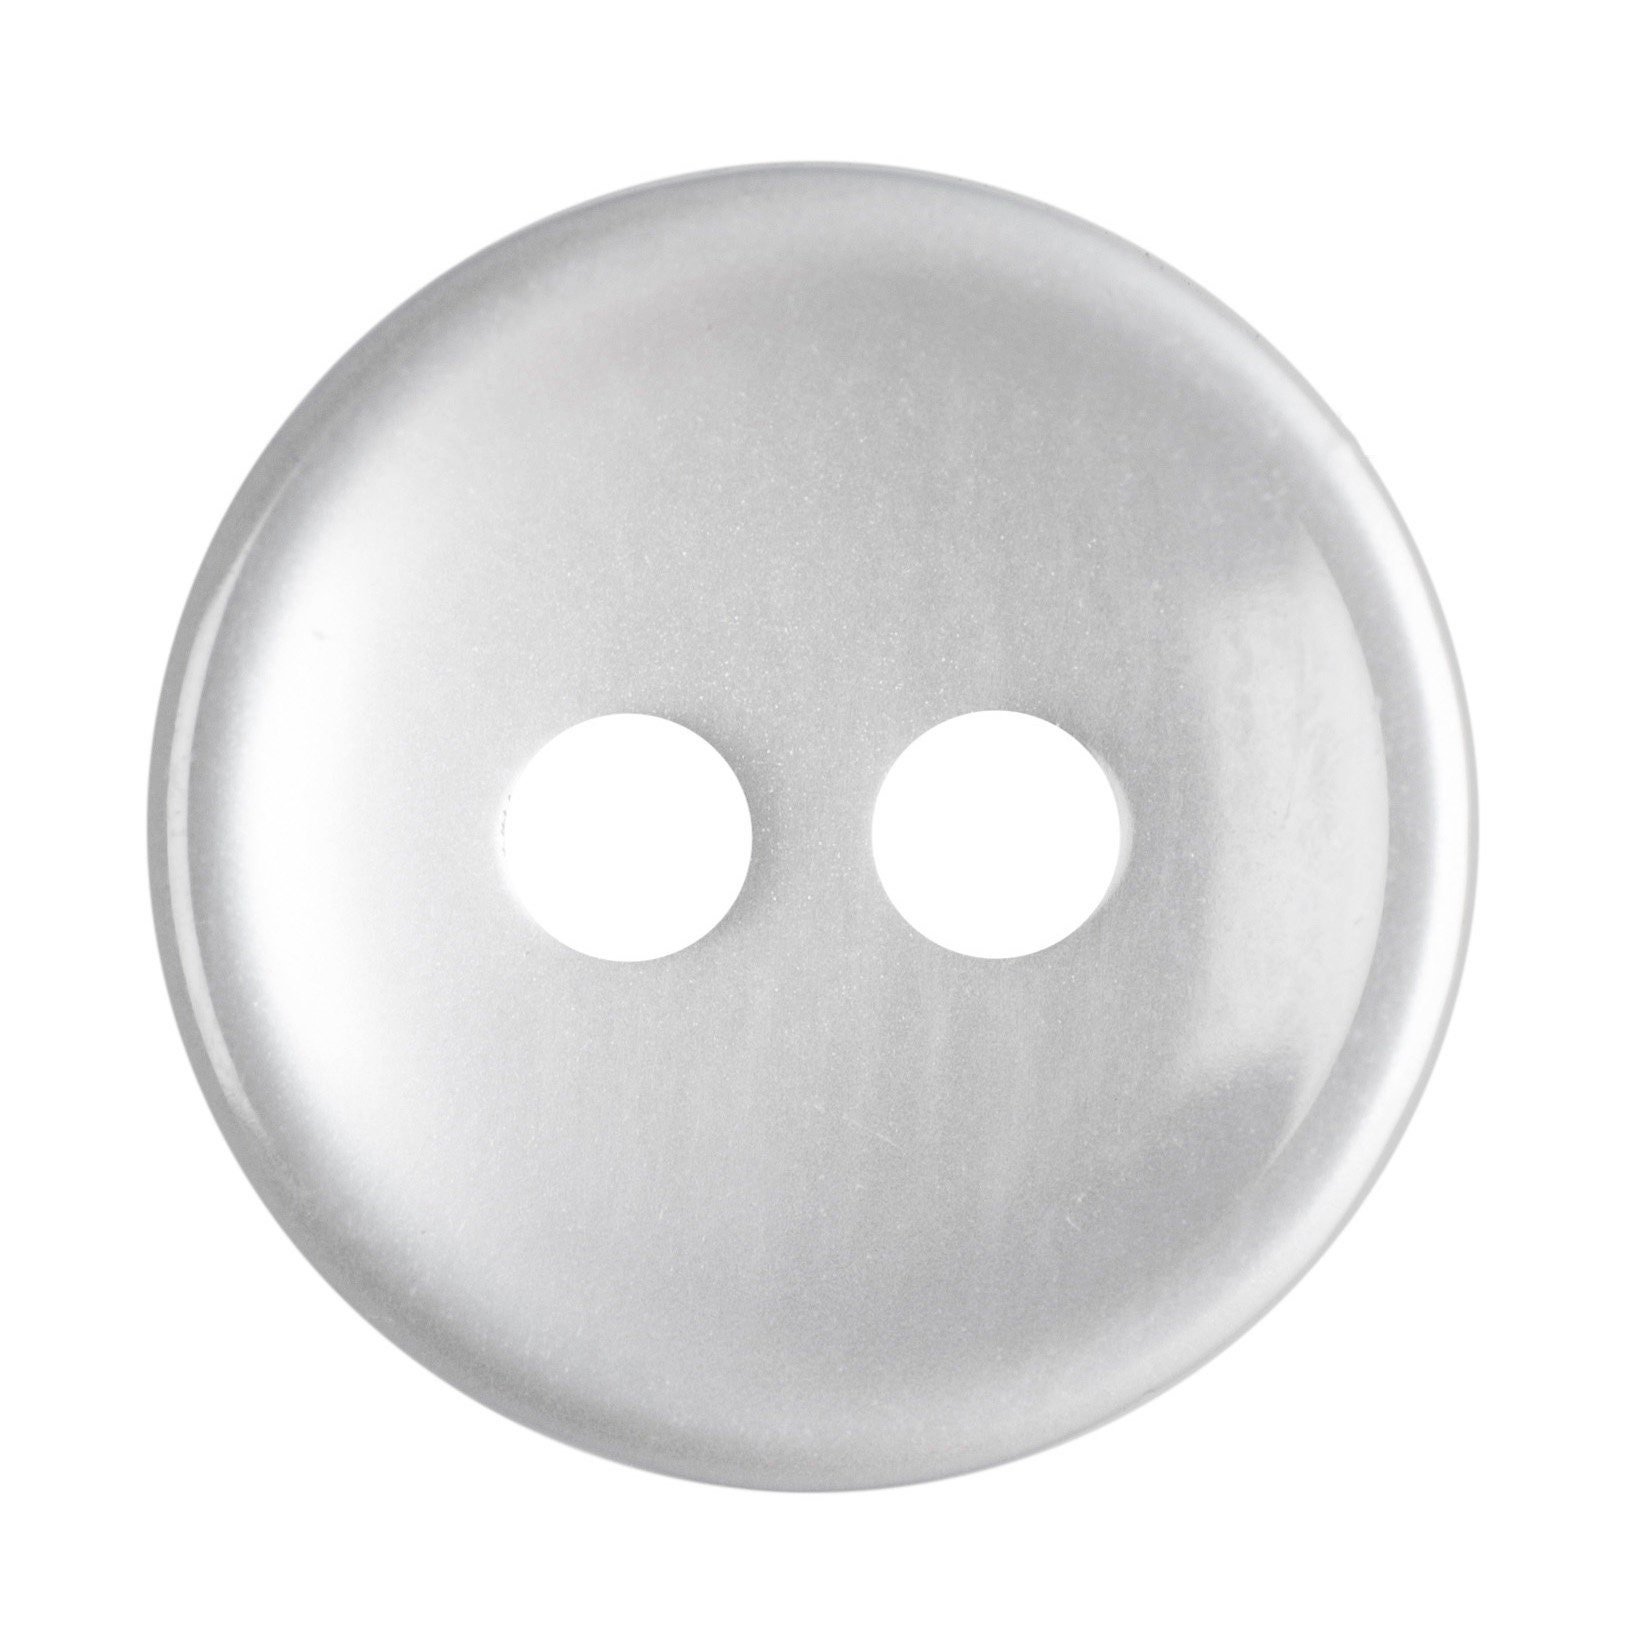 Giant WHITE buttons, Giant plastic buttons 5cm, extra large buttons, huge  white button, UK buttons shop, coat buttons, 4 pcs